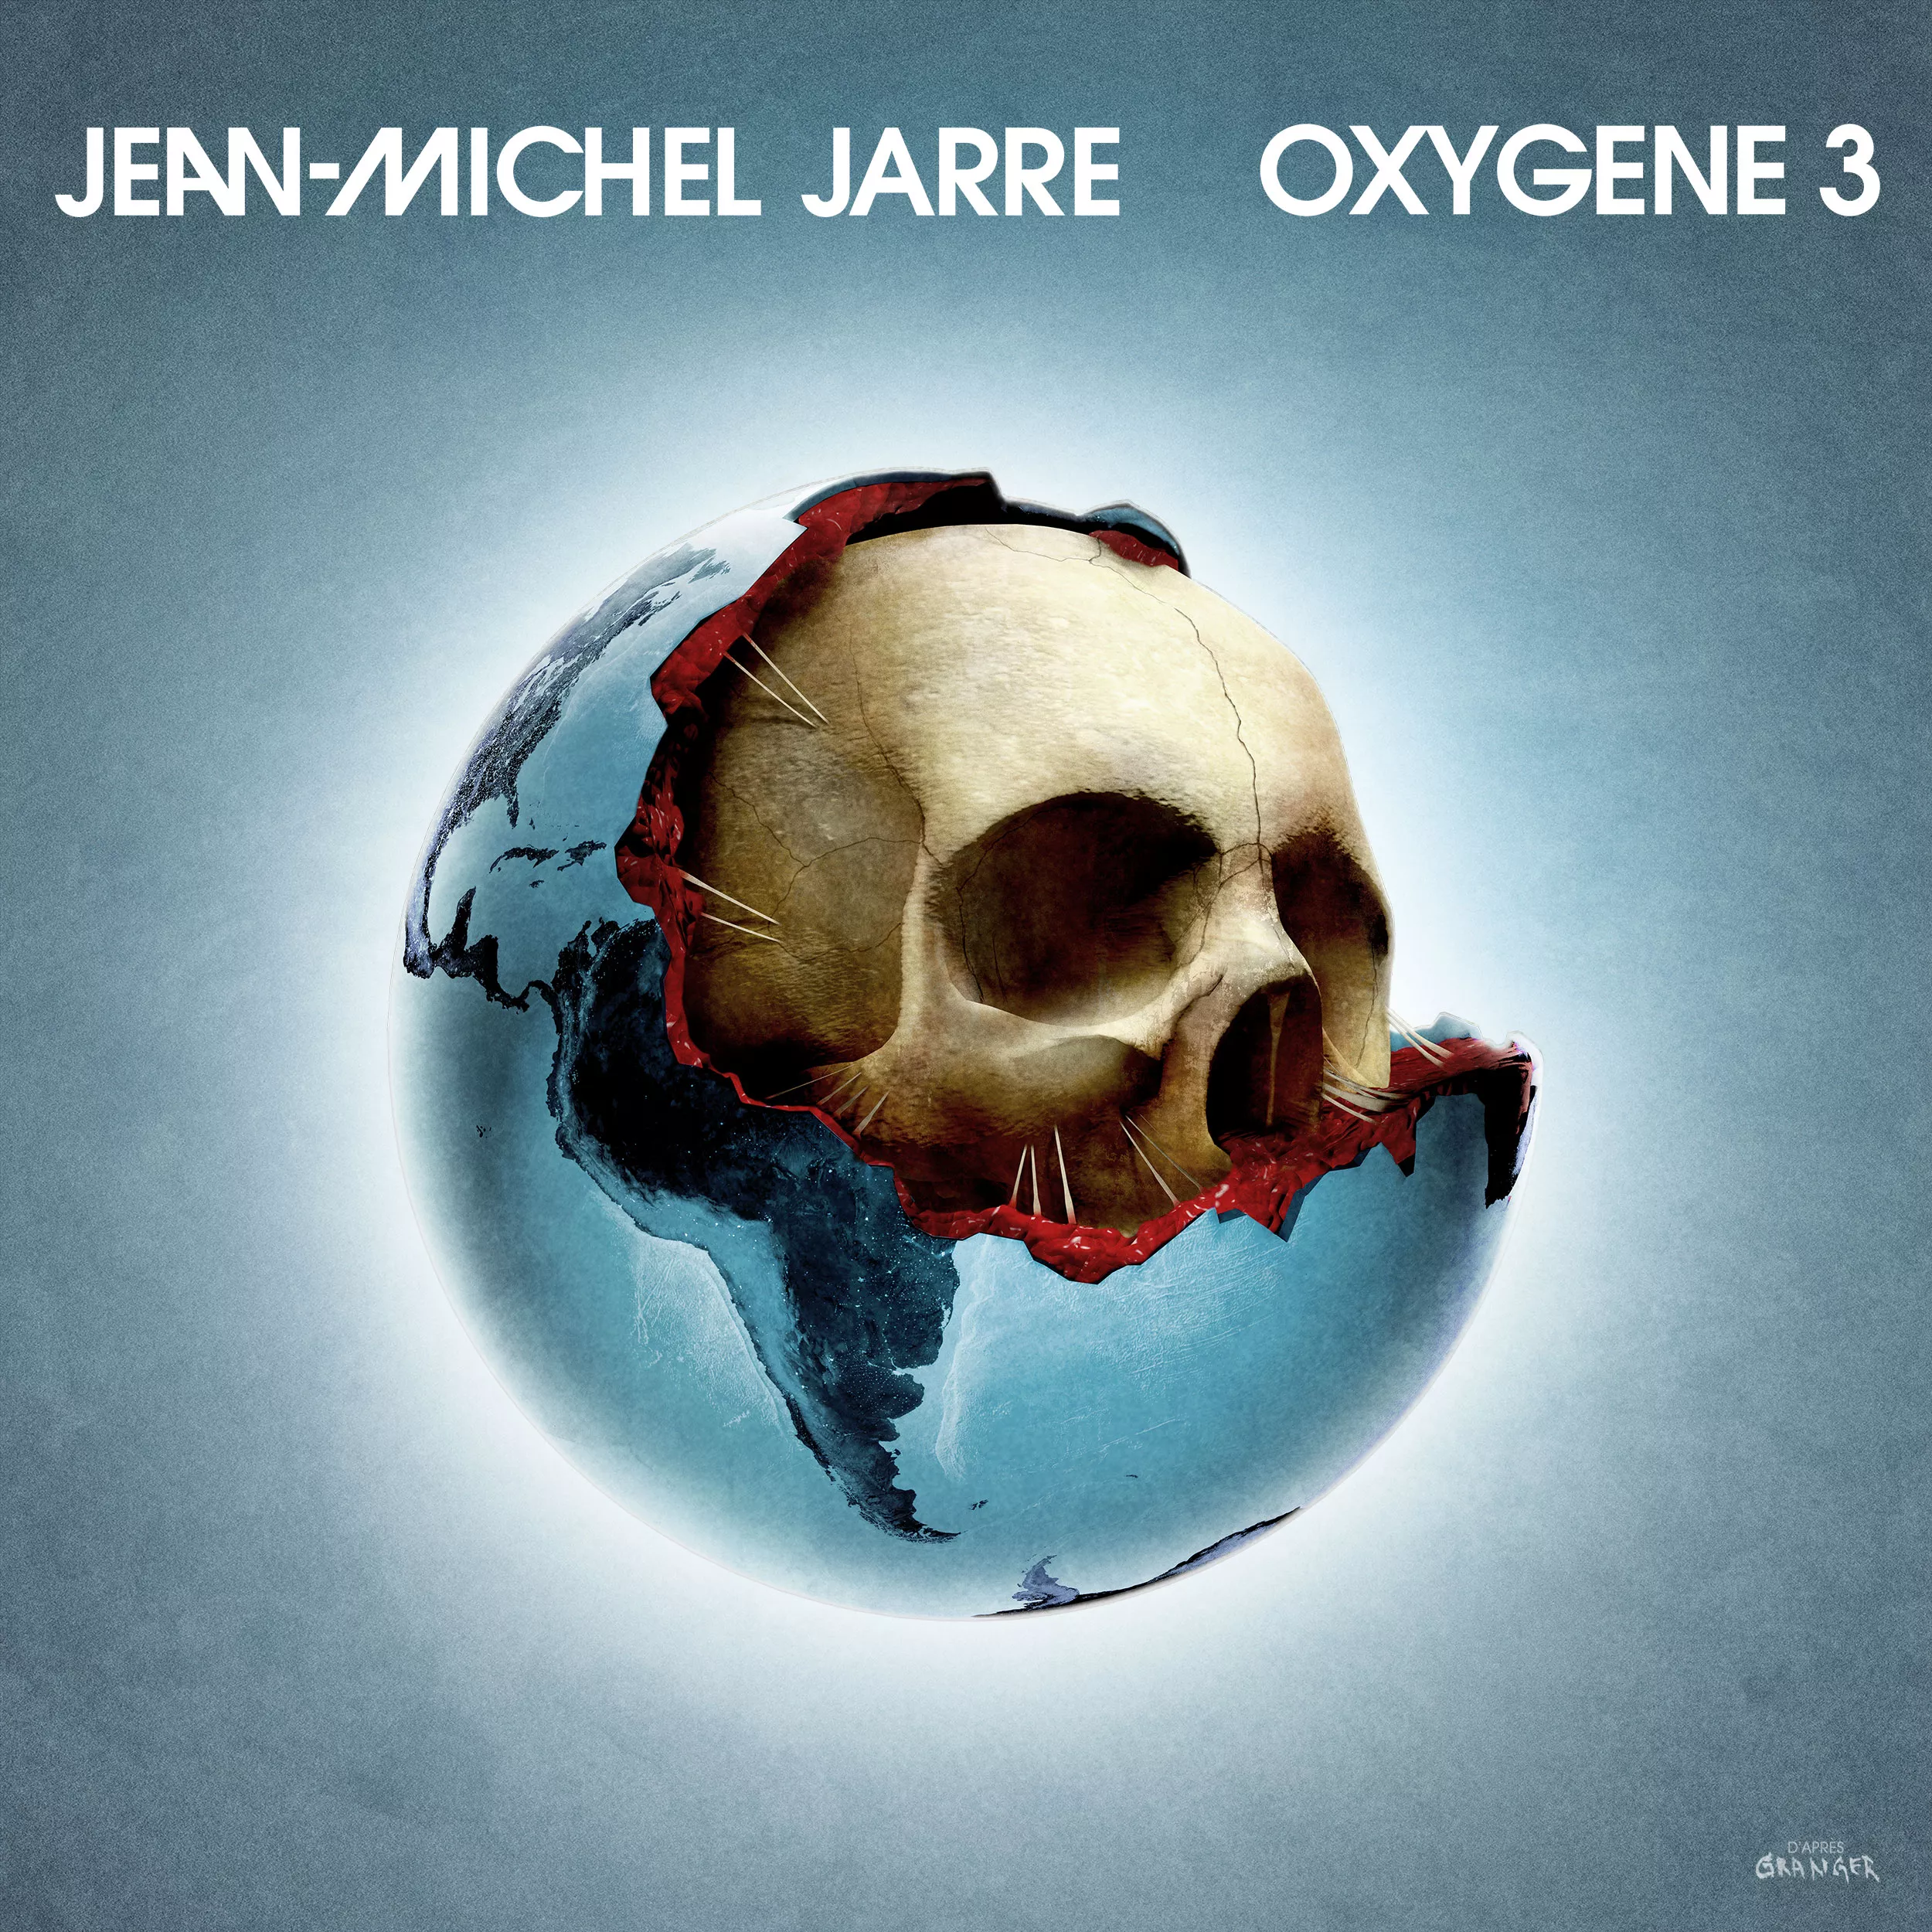 Oxygene 3 - Jean-Michel Jarre